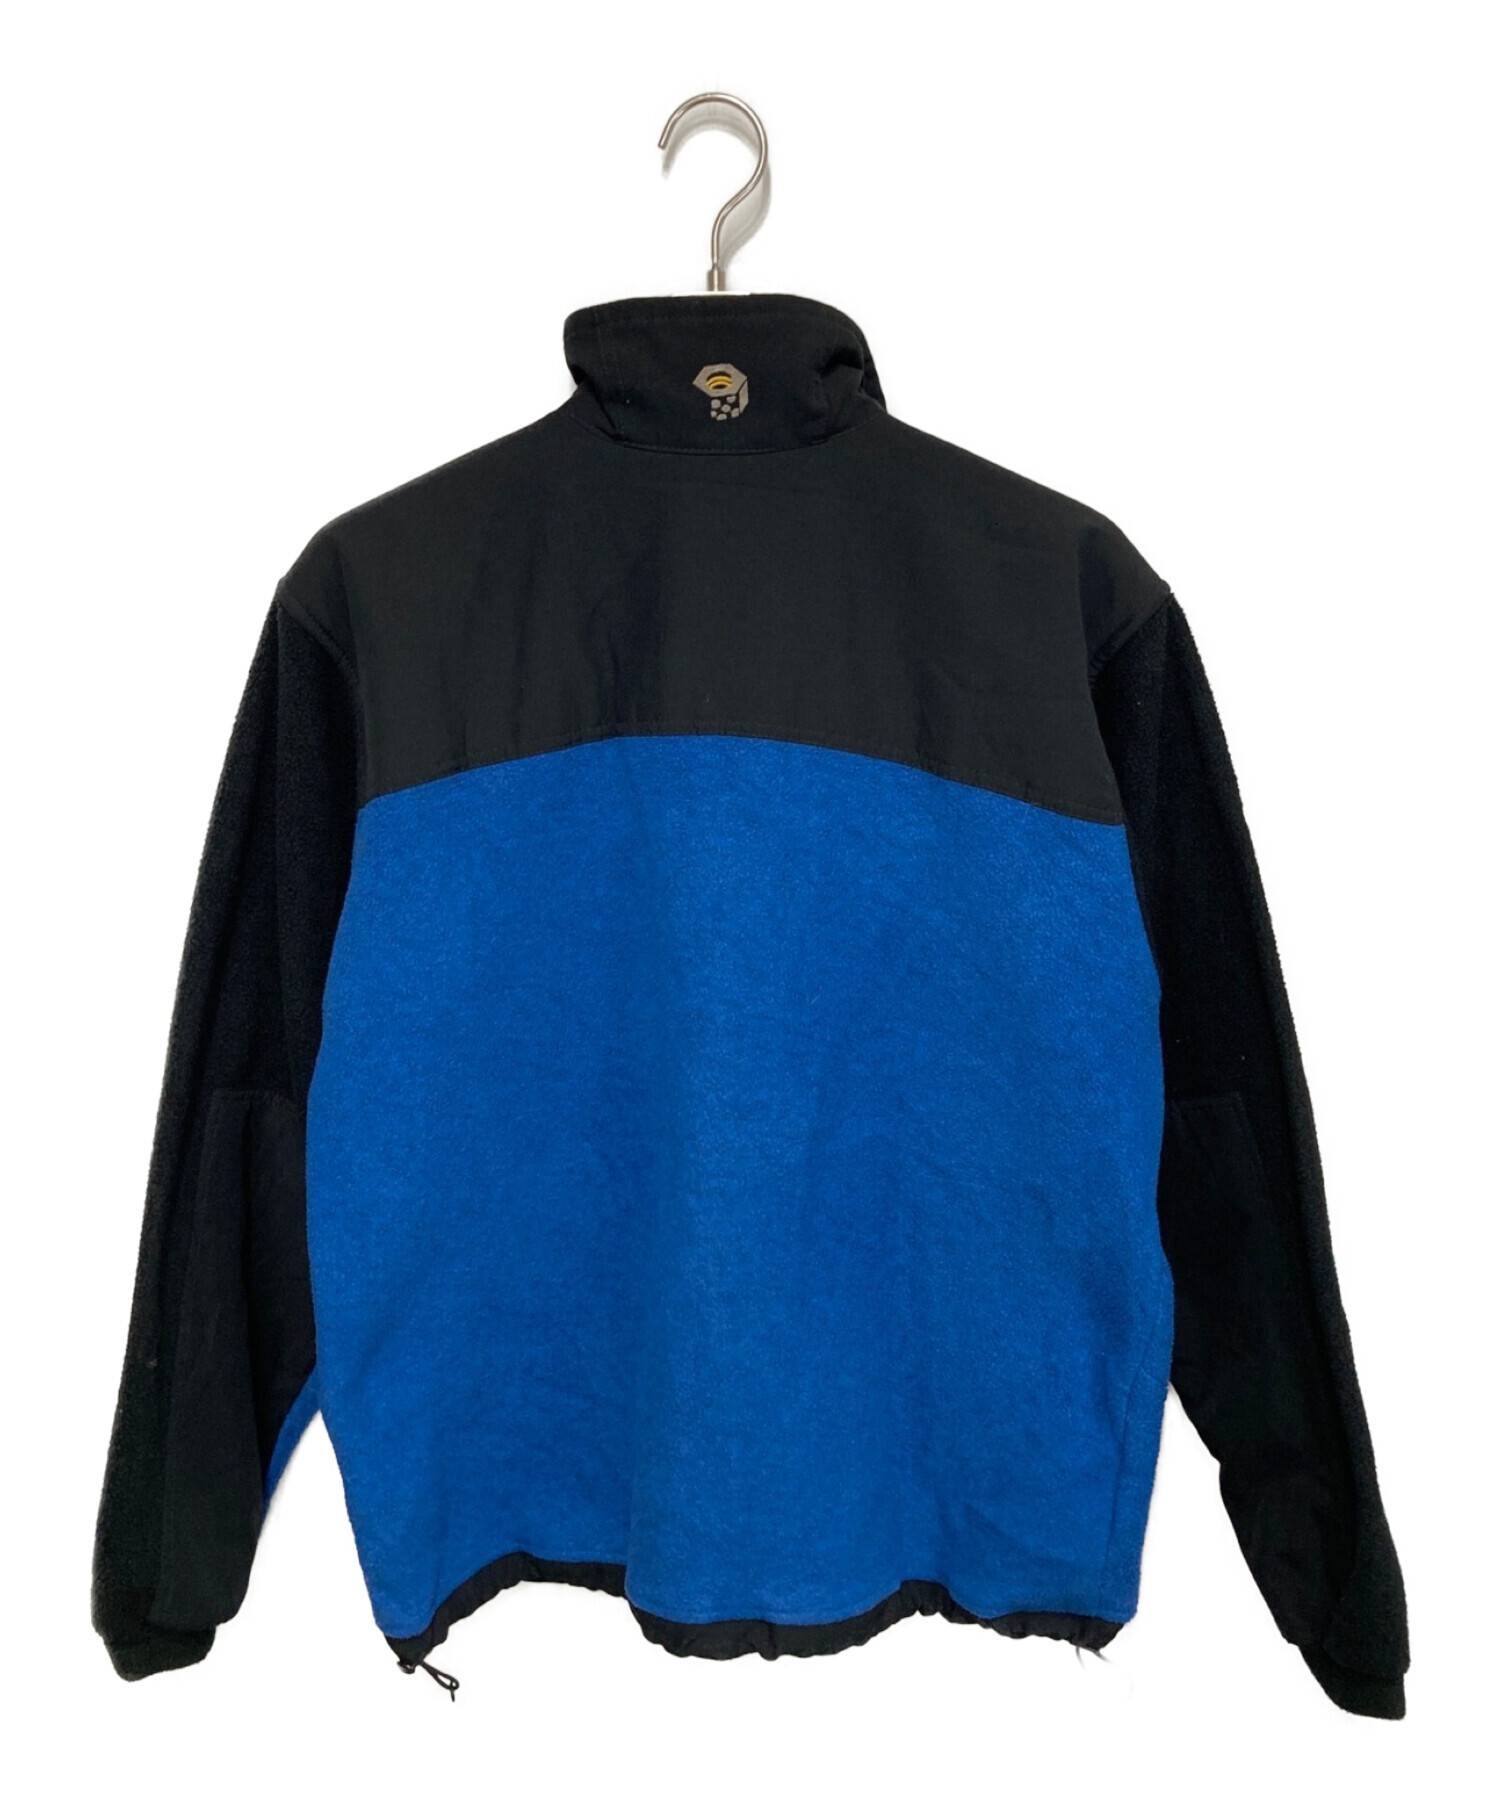 MOUNTAIN HARD WEAR (マウンテンハードウェア) フリースジャケット ブルー サイズ:M